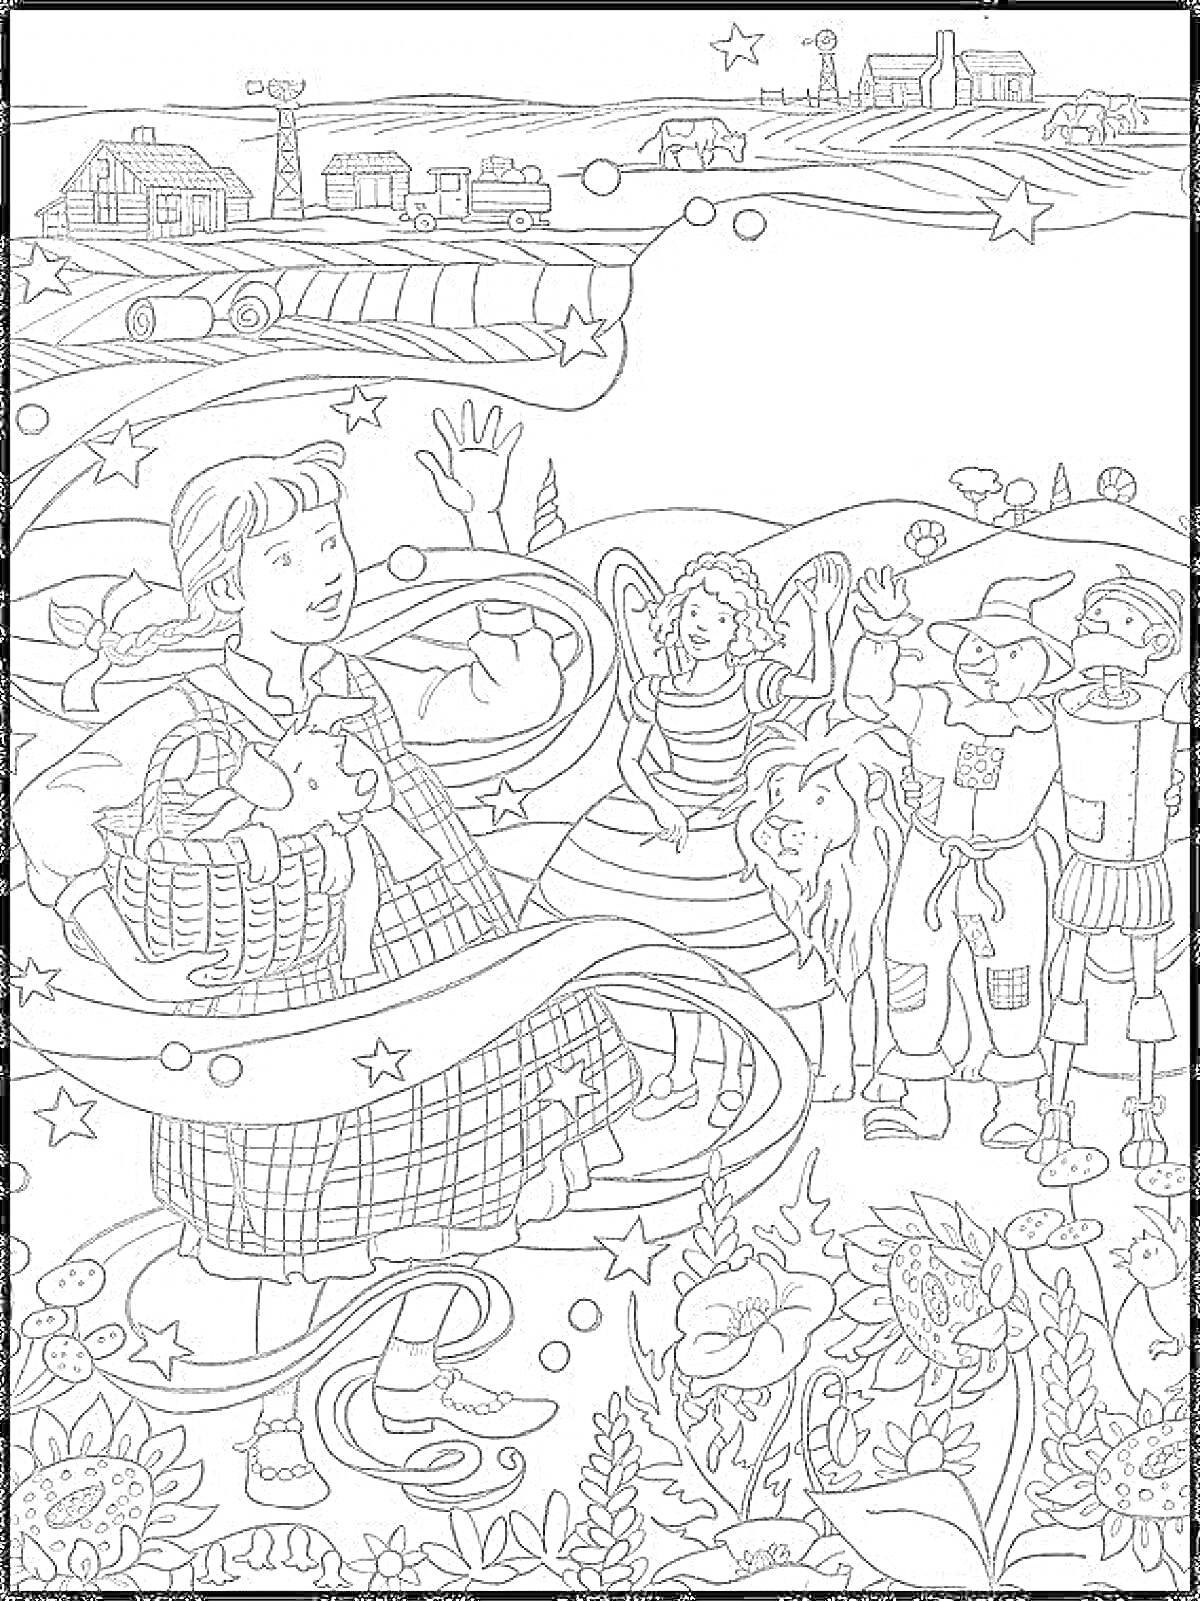 Раскраска Дороти с Тотошкой и друзьями из Изумрудного города, на фоне дом на ферме, полевые цветы, дороги, завод и железная дорога